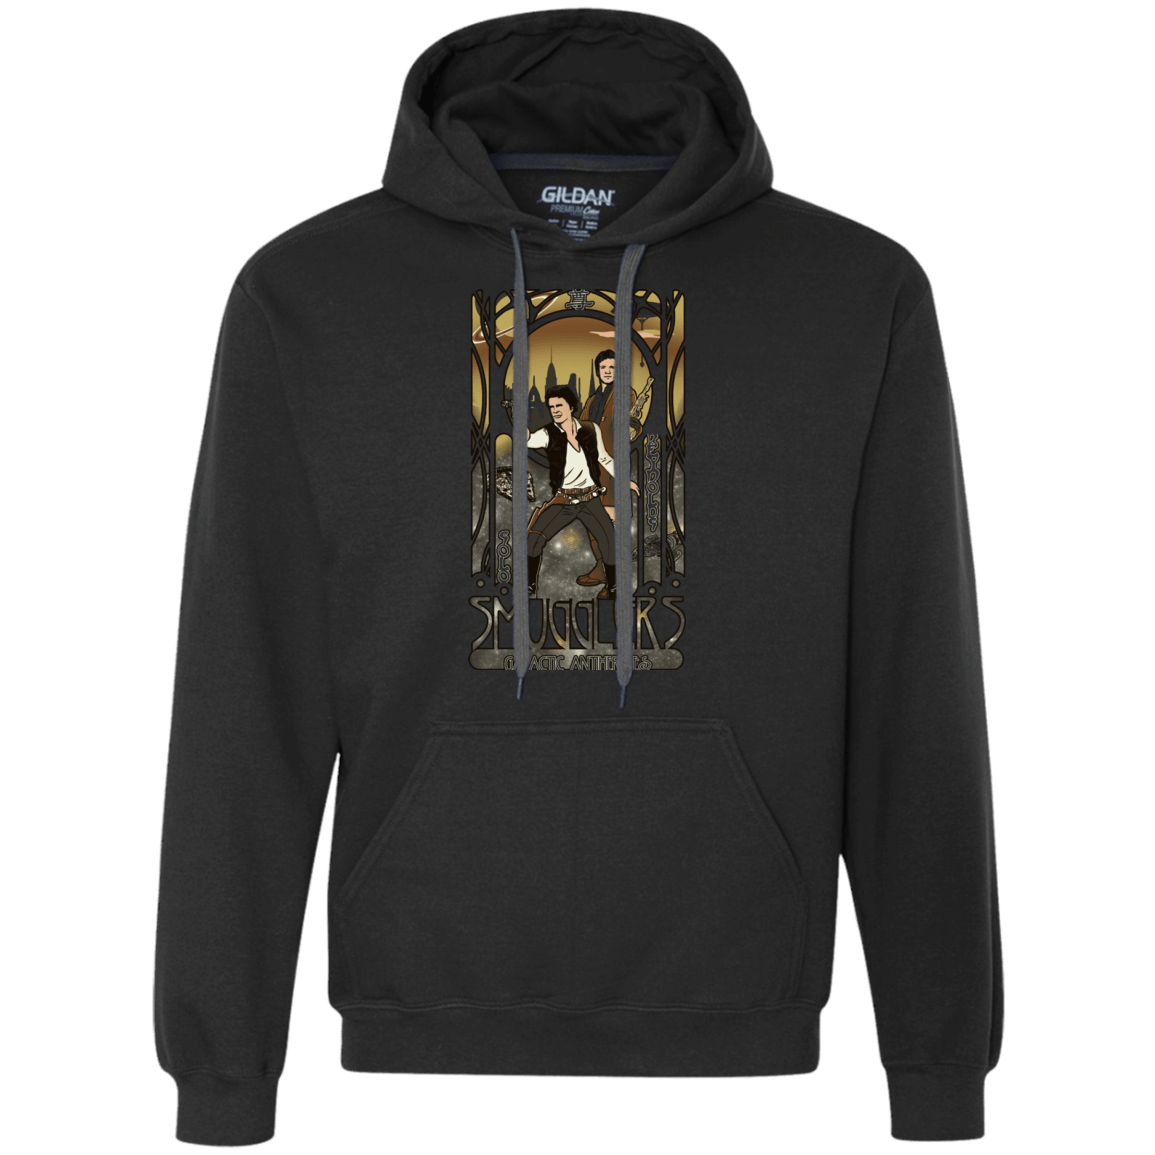 Sweatshirts Black / Small Smugglers, Inc Premium Fleece Hoodie